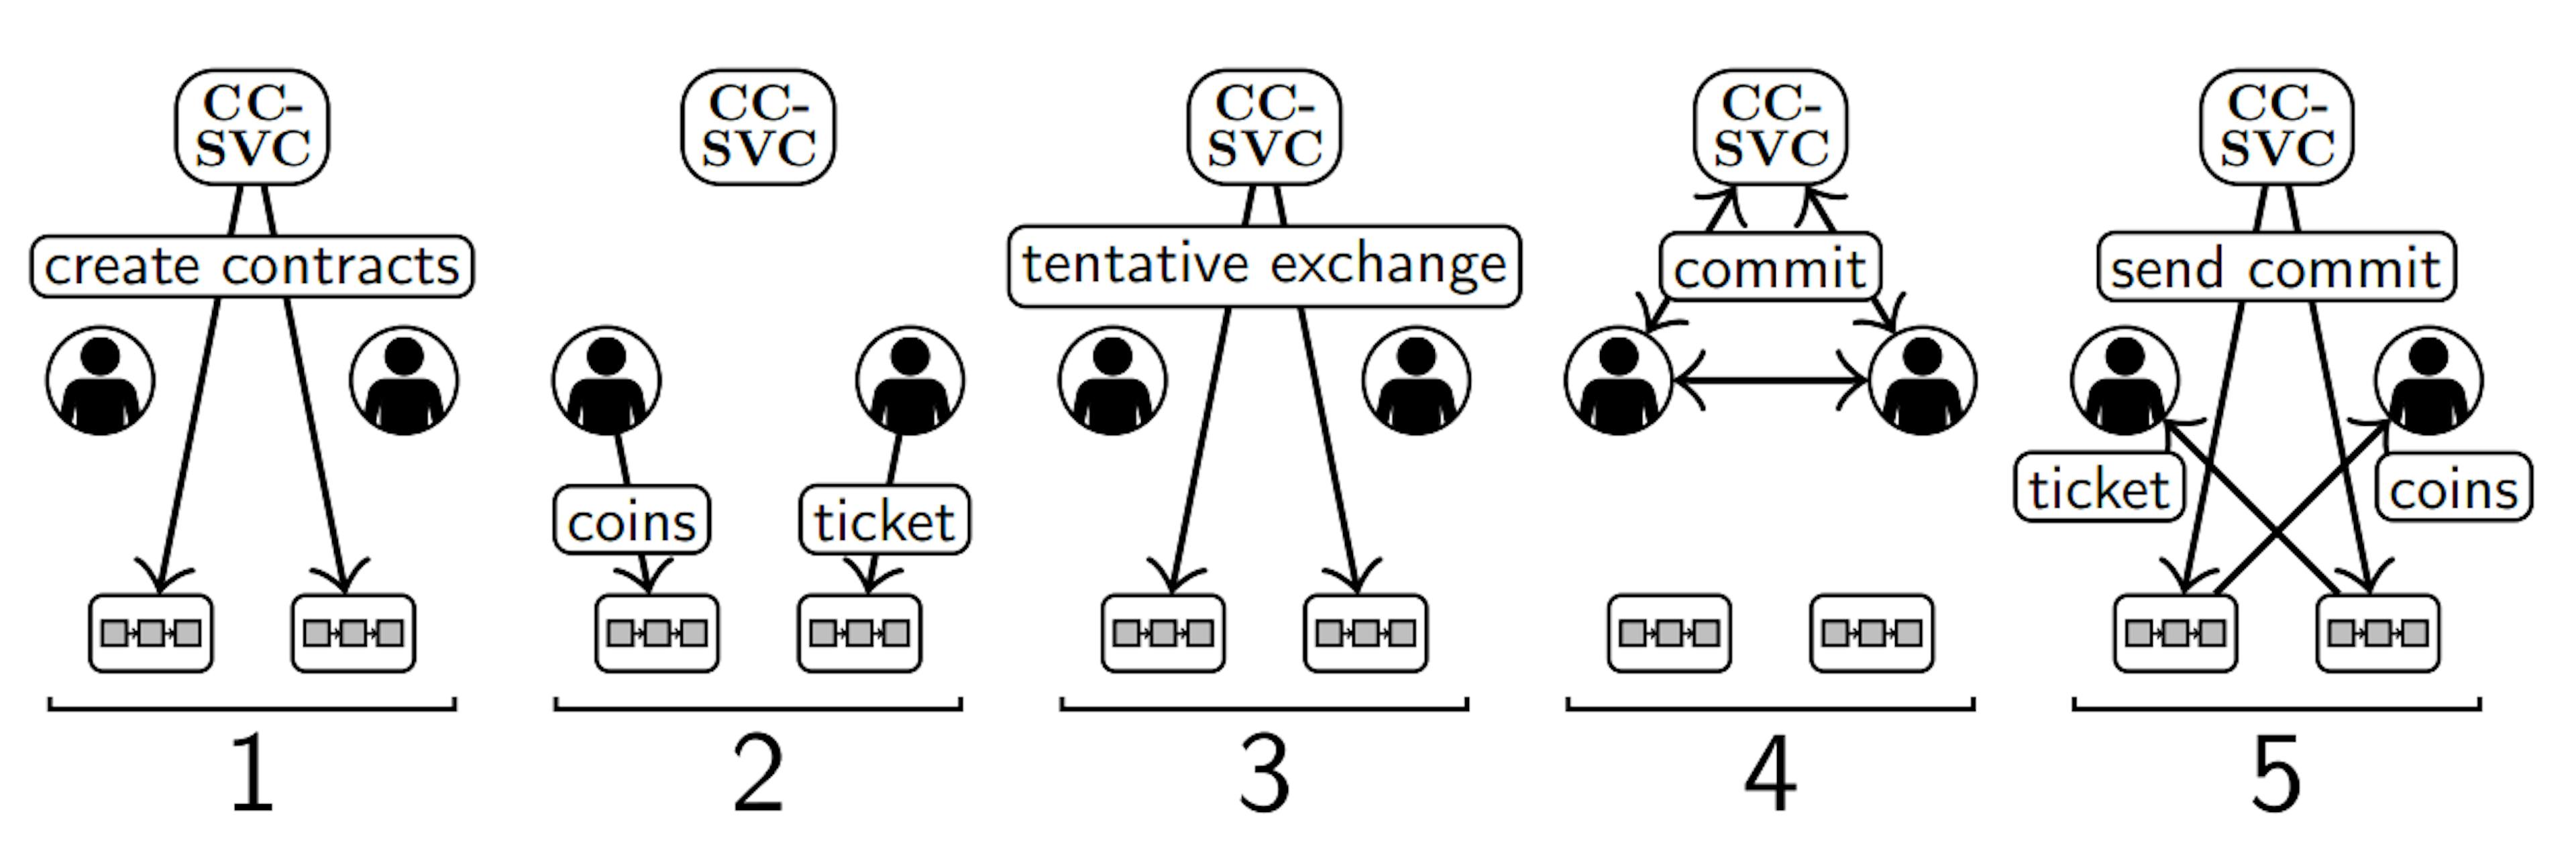 Abb. 2. Darstellung der fünf Schritte von Abschnitt II-B in einer Umgebung mit einem CC-SVC (oben), zwei Benutzern (Mitte) und zwei Blockchains (unten). Das Kafka-Netzwerk wird nicht angezeigt.